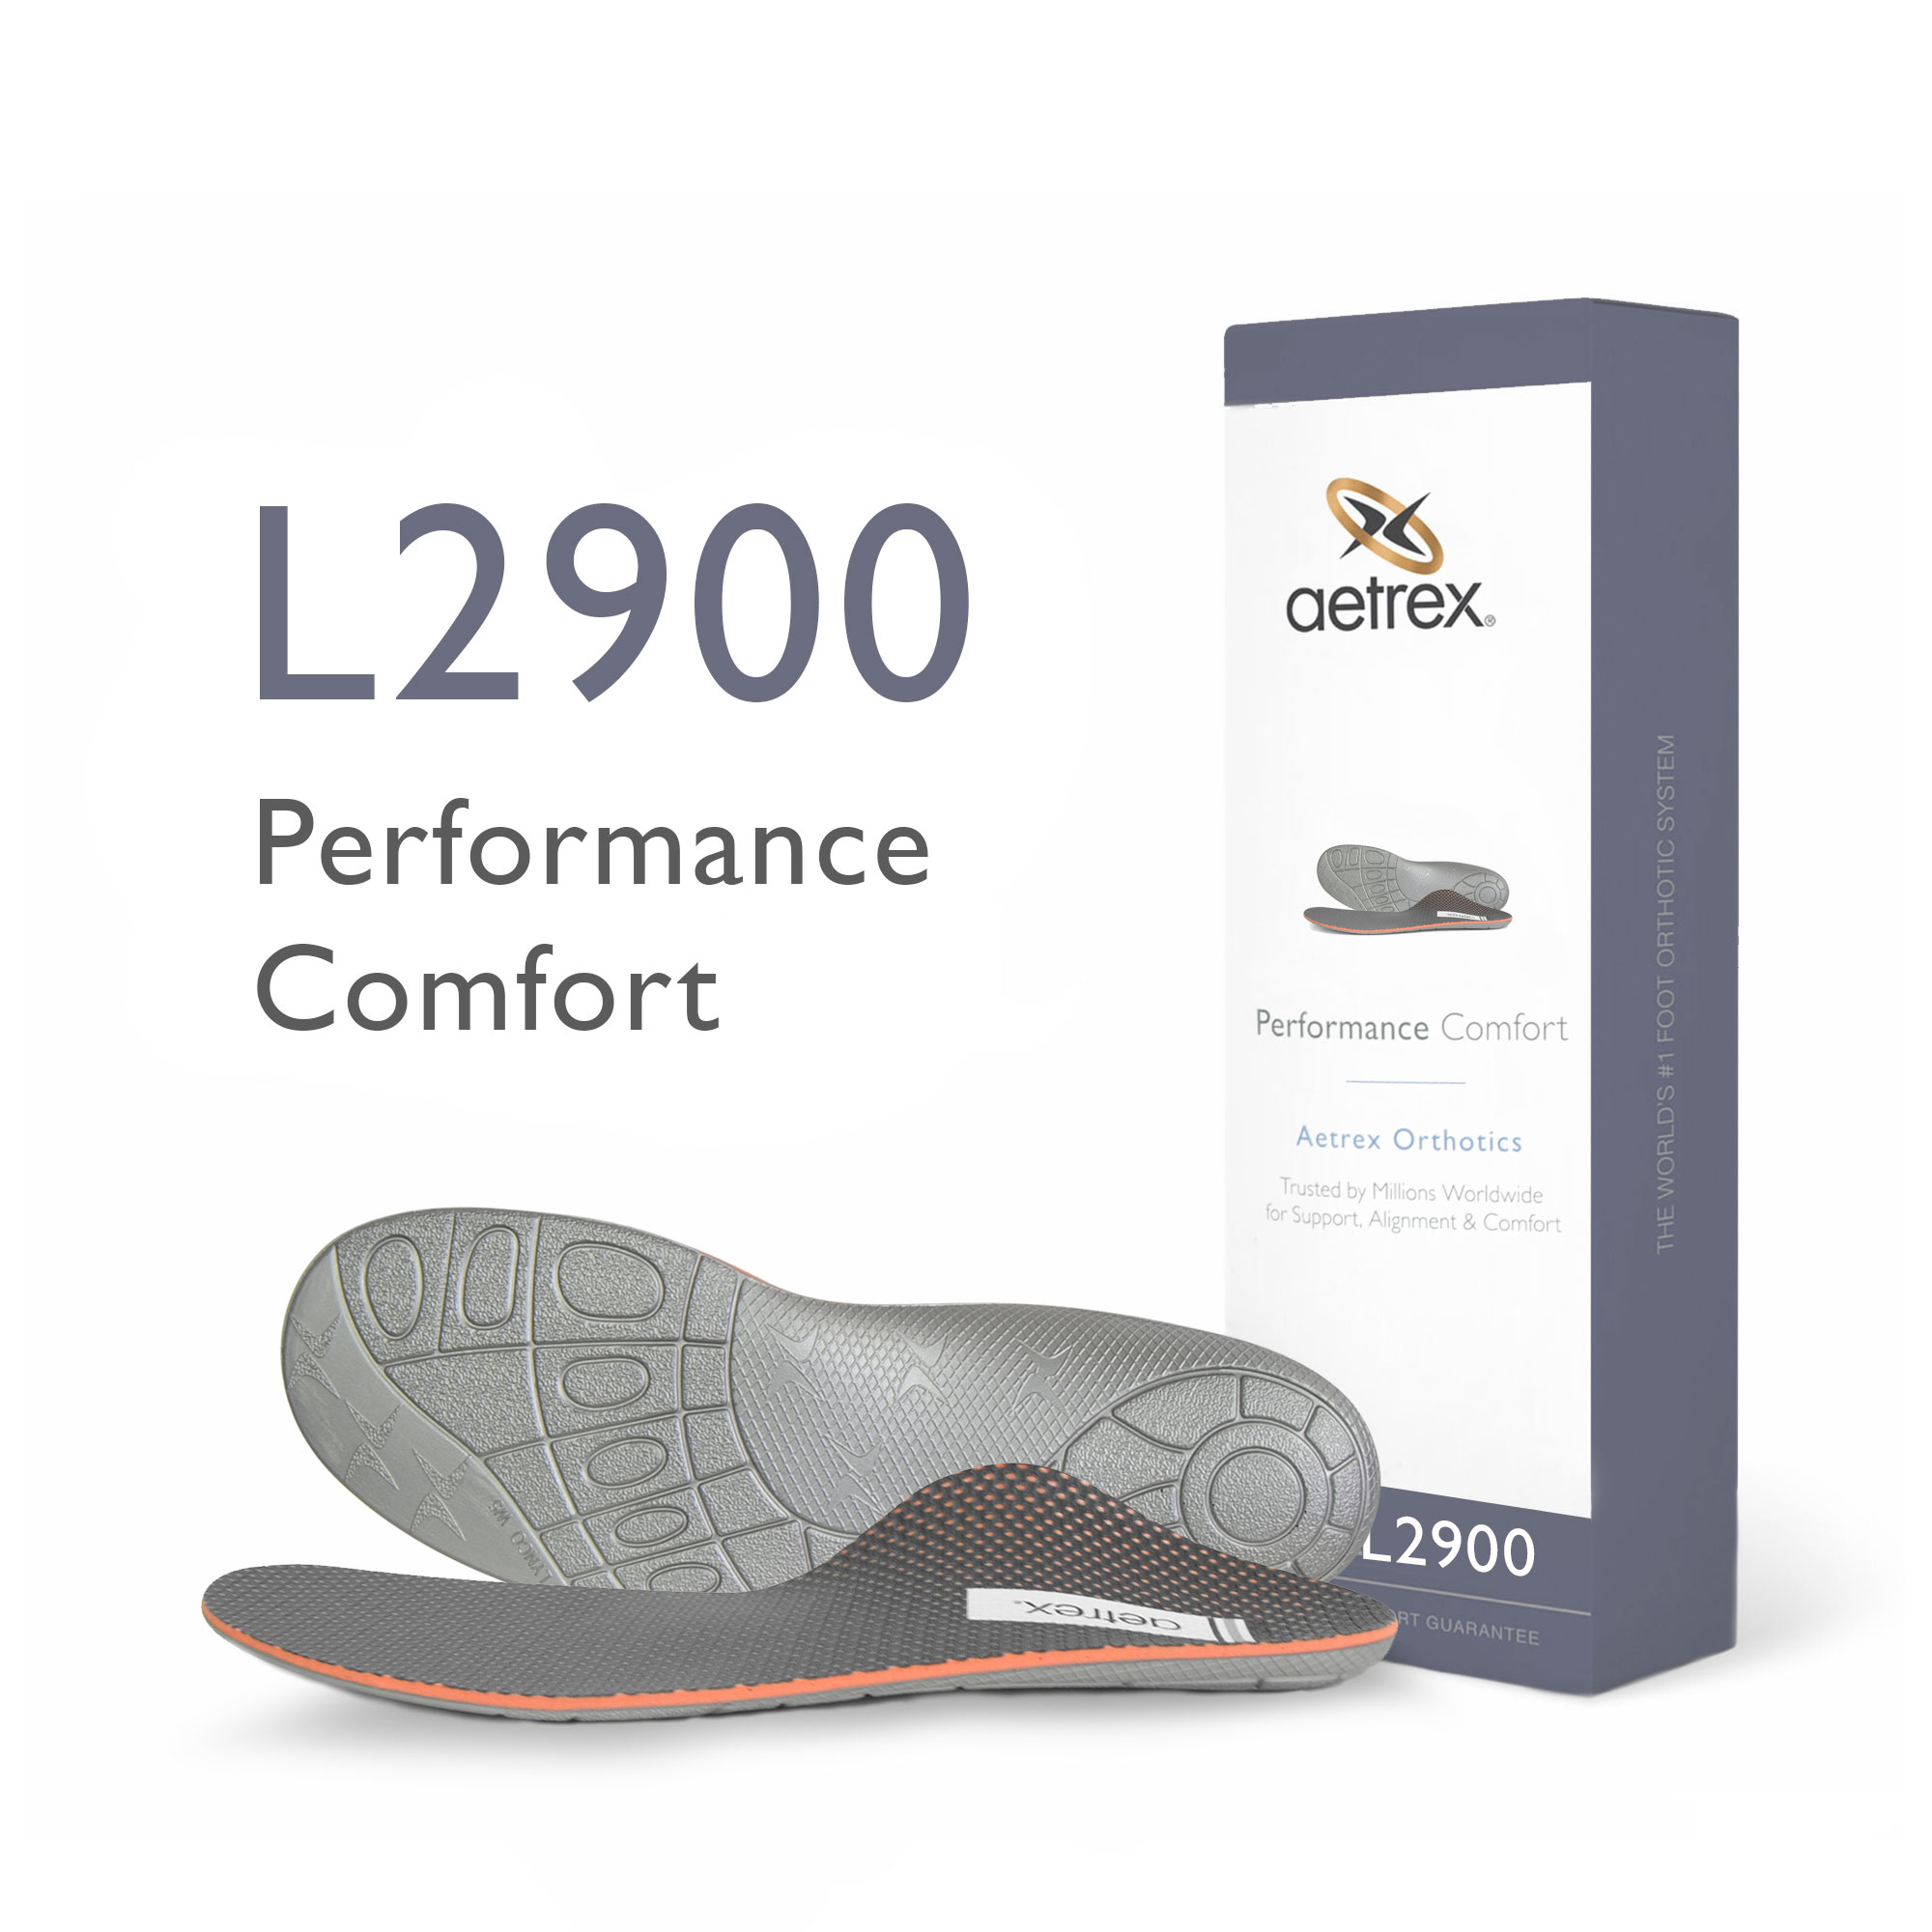 Comfort Footwear for Wide Feet, Aetrex Worldwide